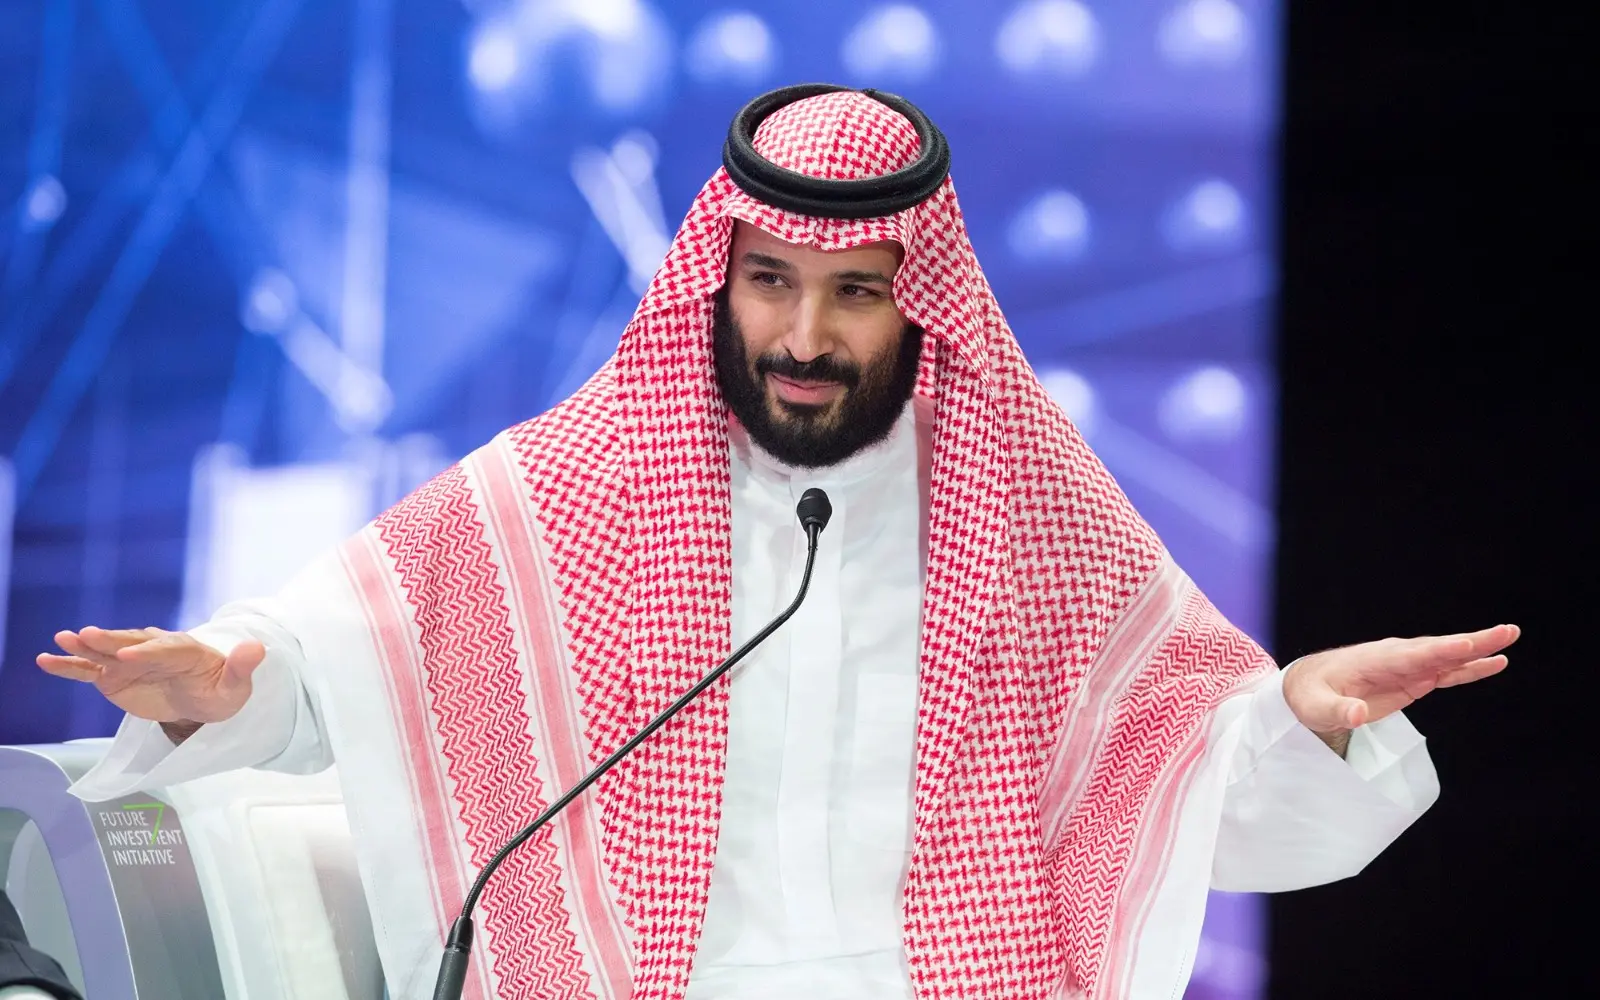 יורש העצר של ערב הסעודית, מוחמד בן סלמאן, בכנס כלכלי בריאד, 25 באוקטובר 2018